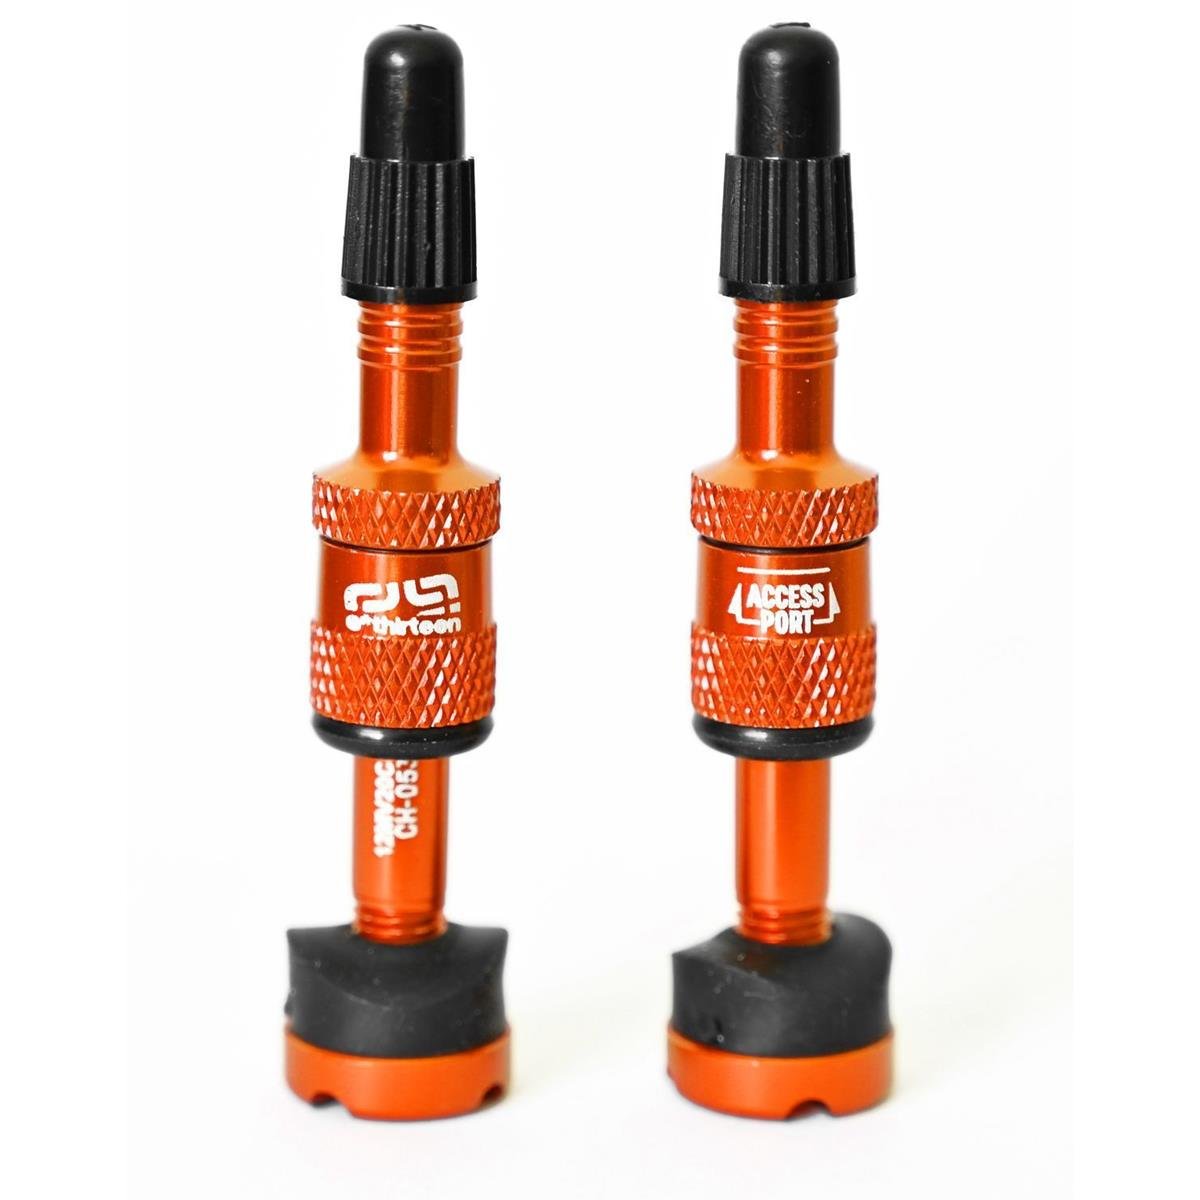 E*thirteen Kit Valves Tubeless Quick Fill Plasma 23-30 mm, Naranja